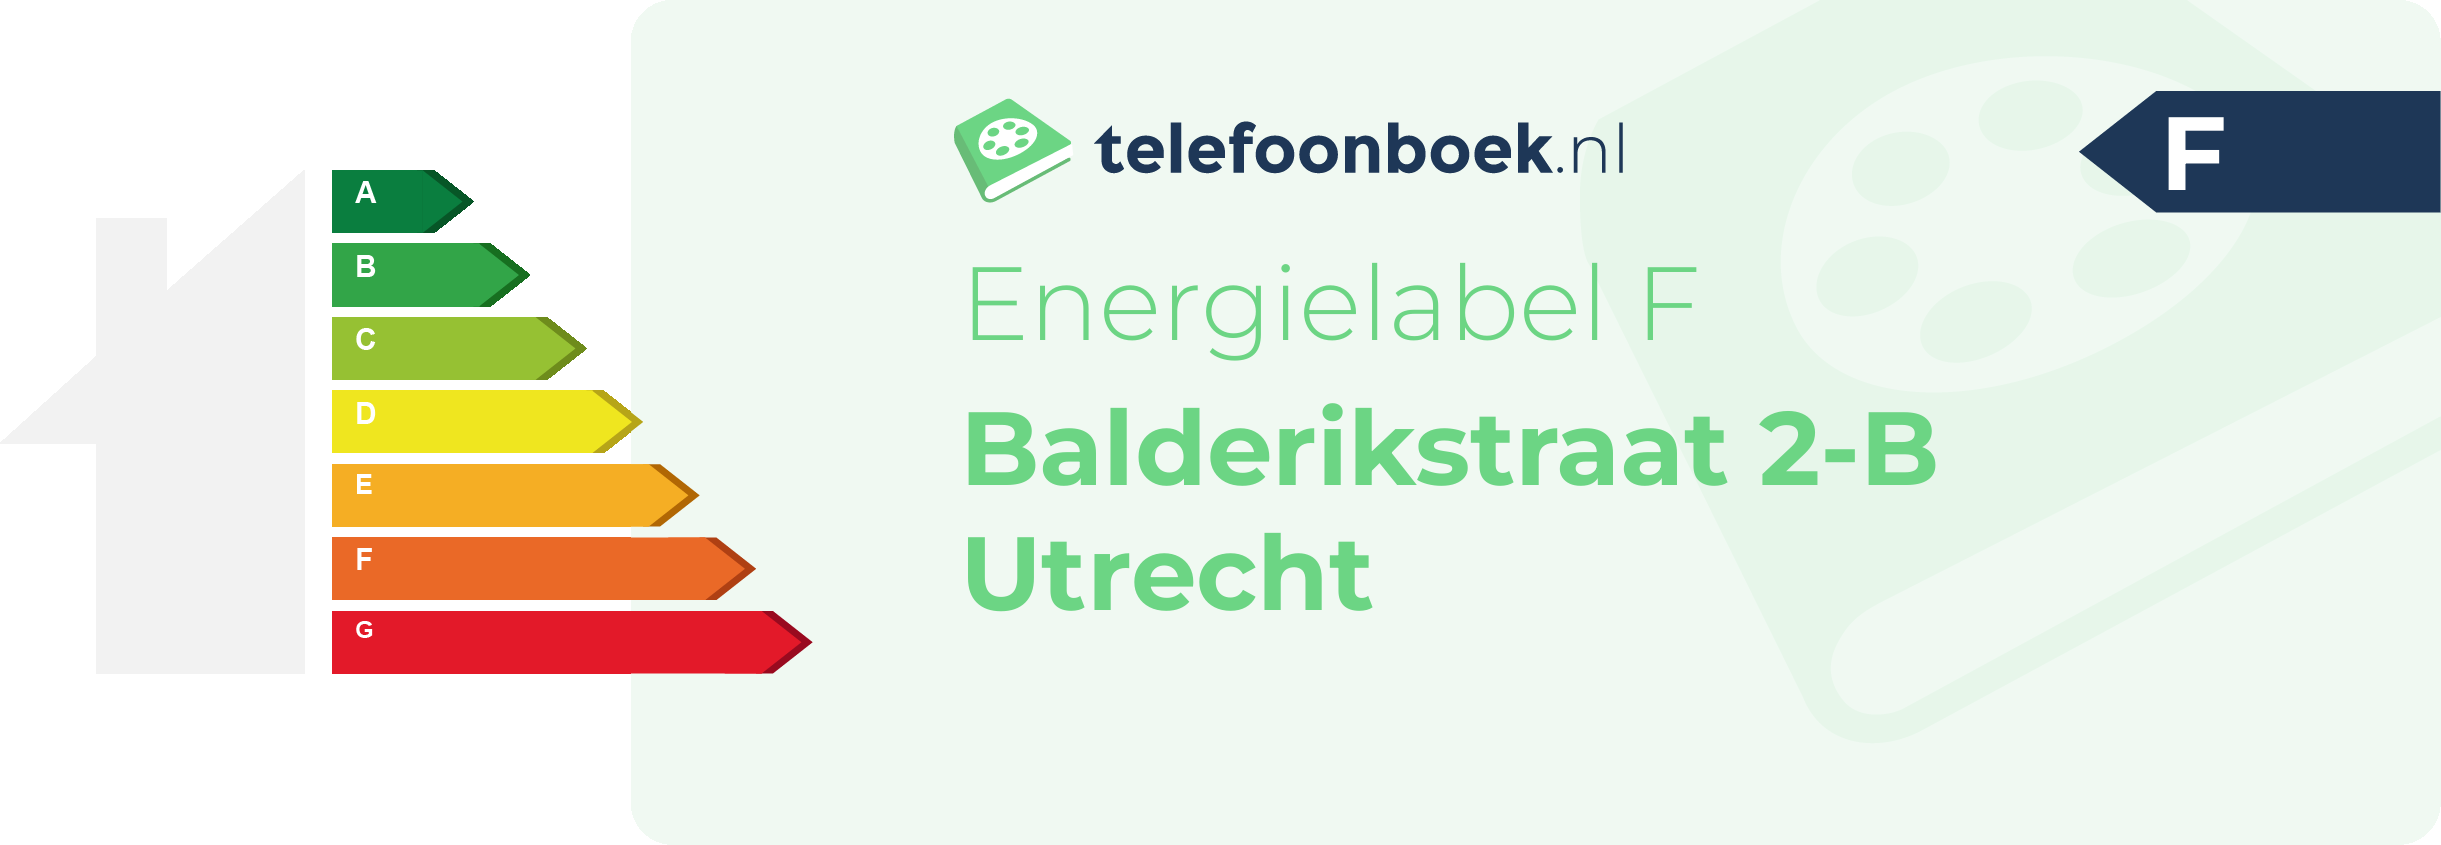 Energielabel Balderikstraat 2-B Utrecht